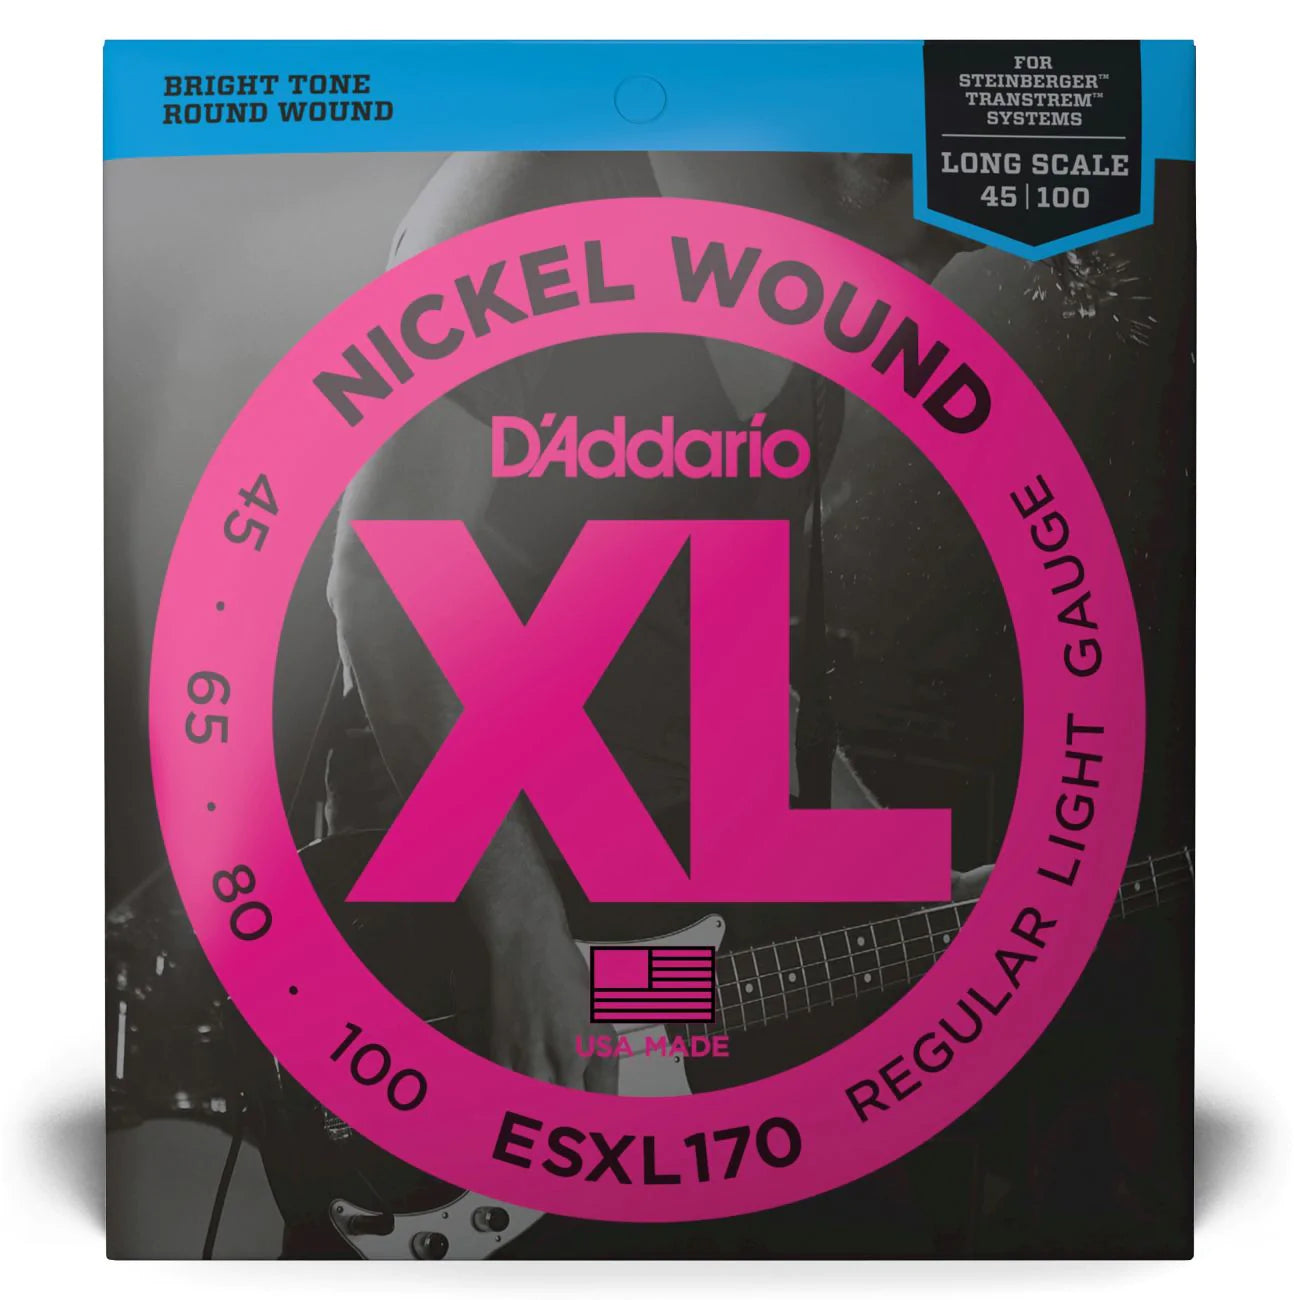 D'Addario ESXL170 | XL Nickel Wound Bass Strings 45-100 Gauge | Light | Double Ball End